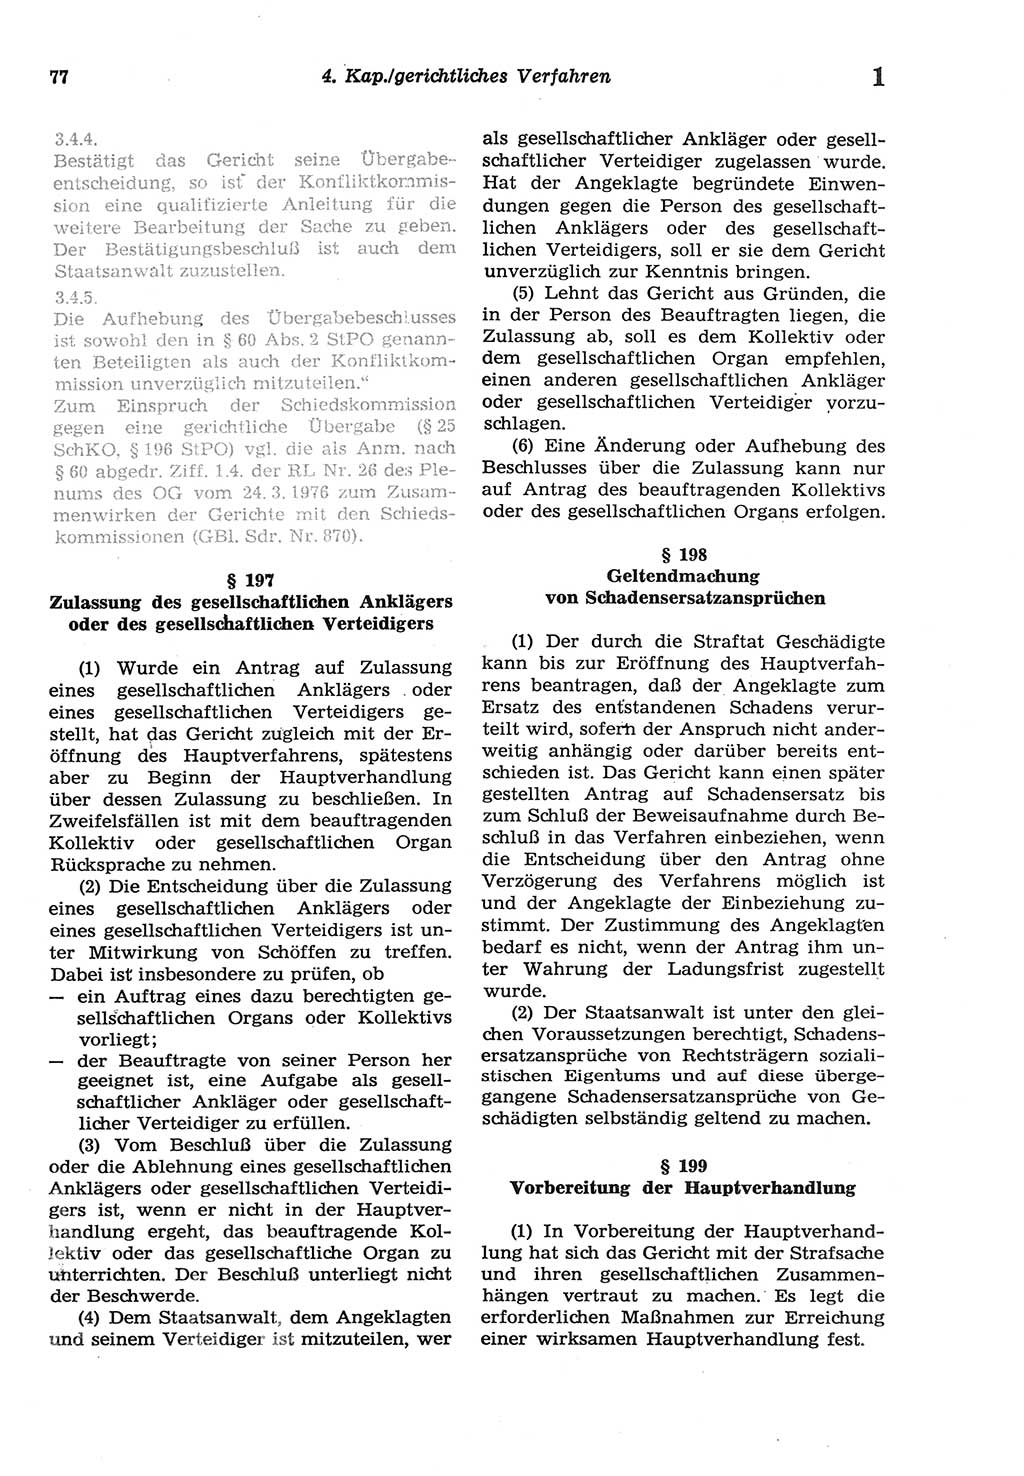 Strafprozeßordnung (StPO) der Deutschen Demokratischen Republik (DDR) sowie angrenzende Gesetze und Bestimmungen 1977, Seite 77 (StPO DDR Ges. Best. 1977, S. 77)